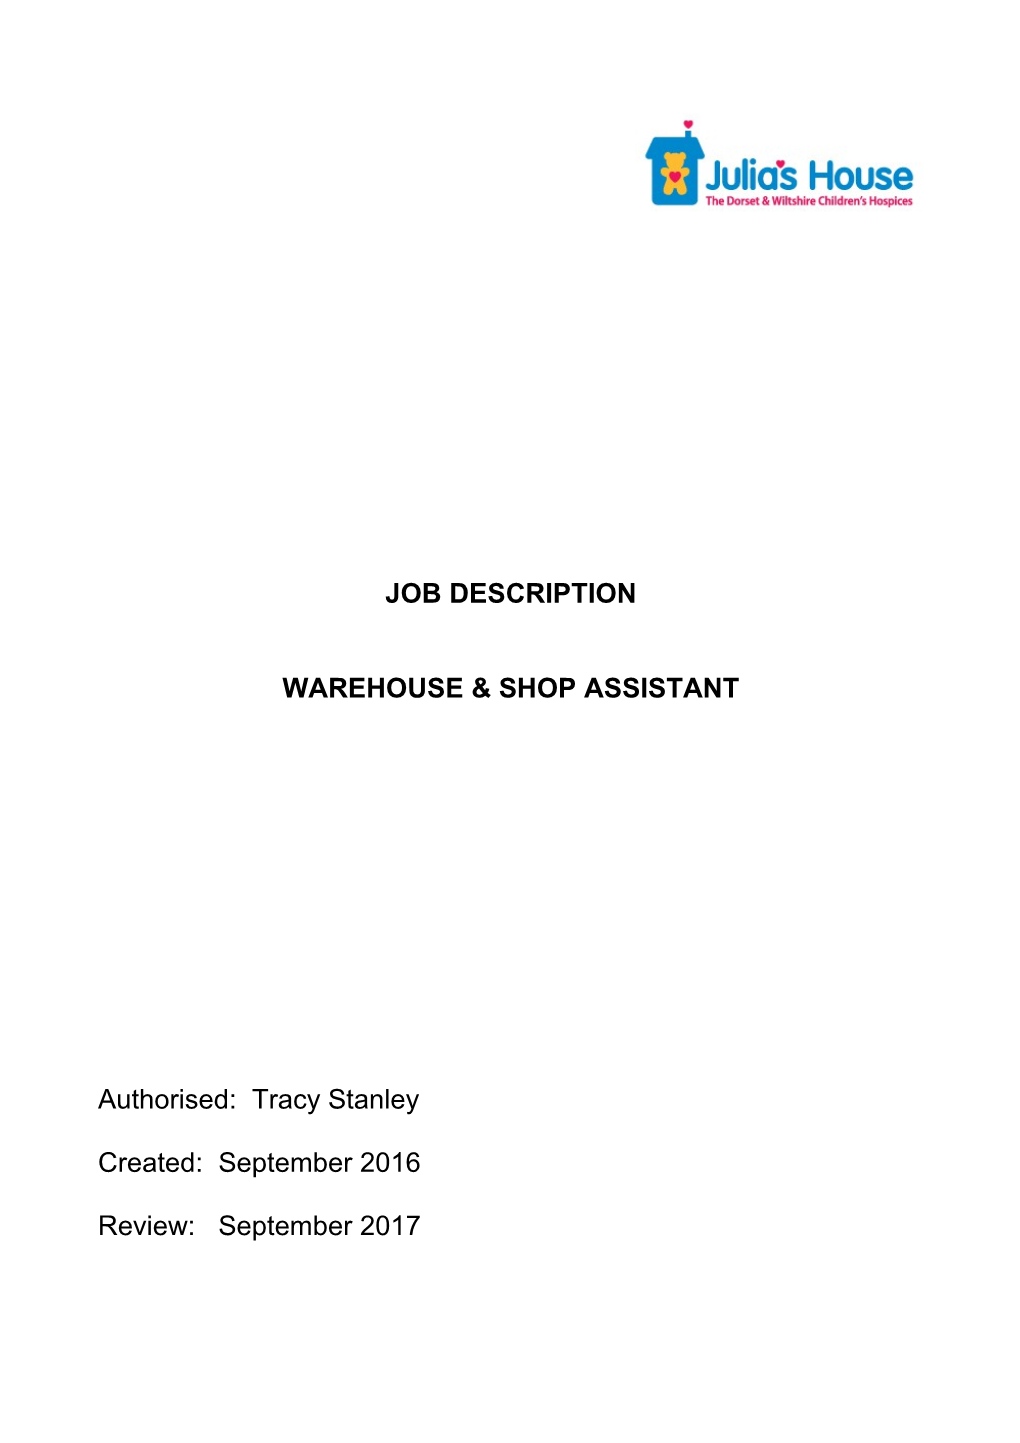 Warehouse & Shop Assistant